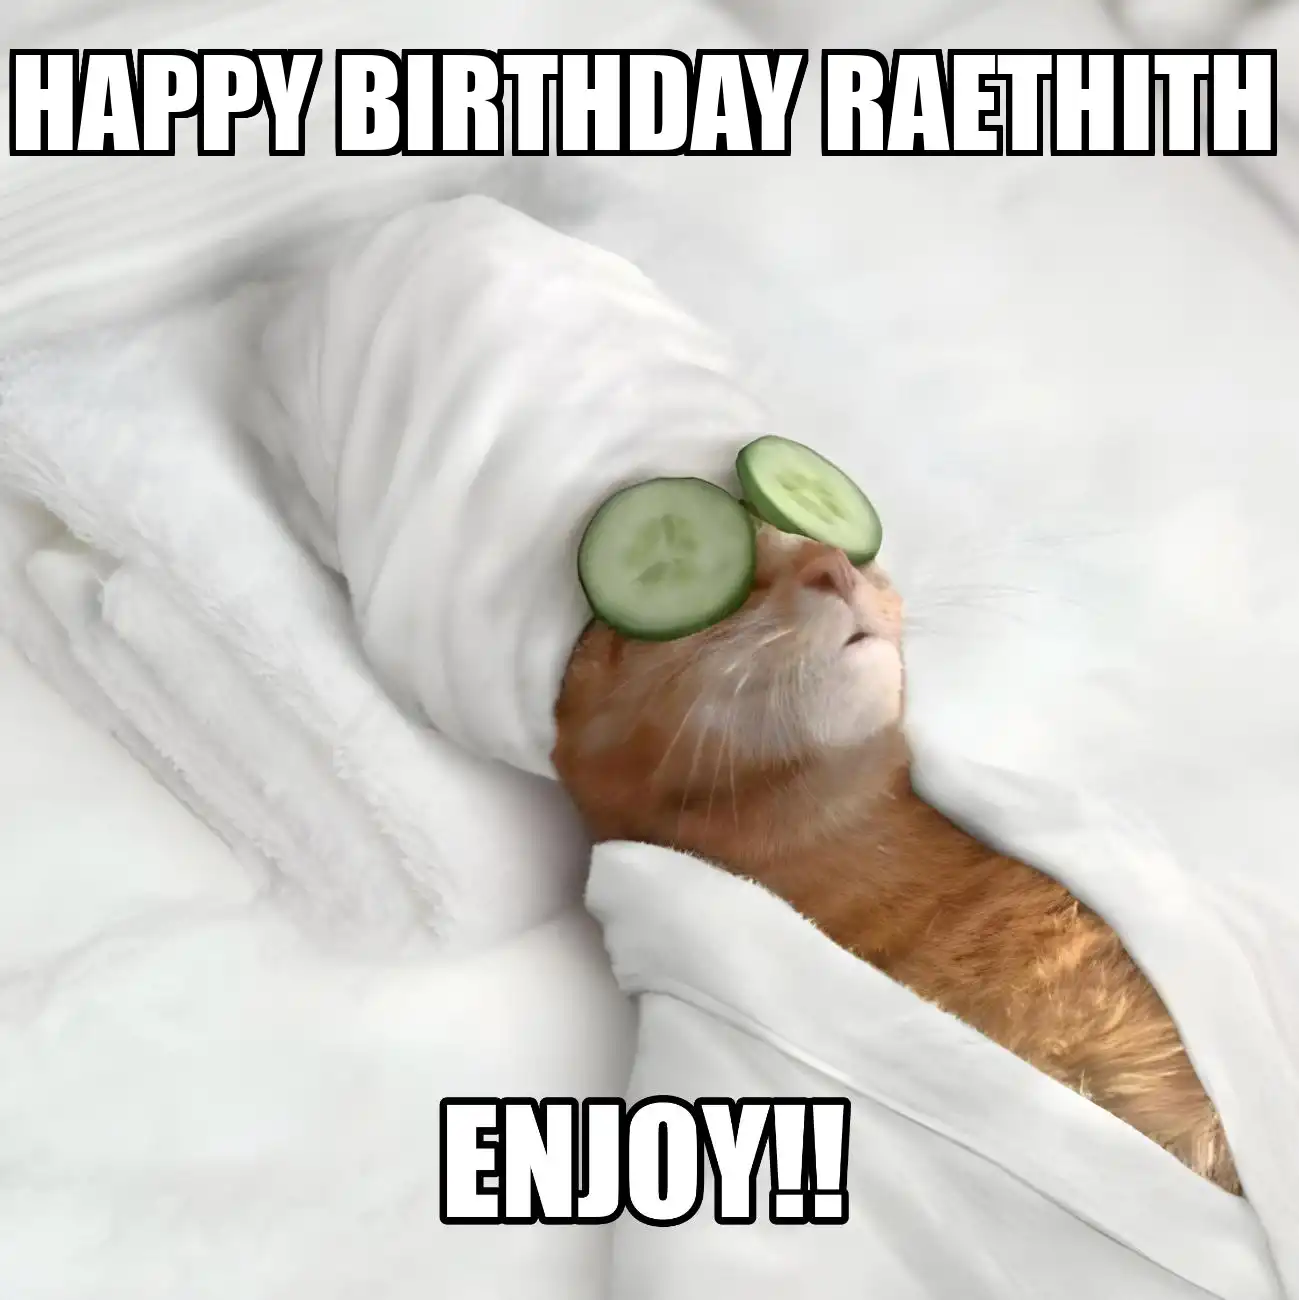 Happy Birthday Raethith Enjoy Cat Meme